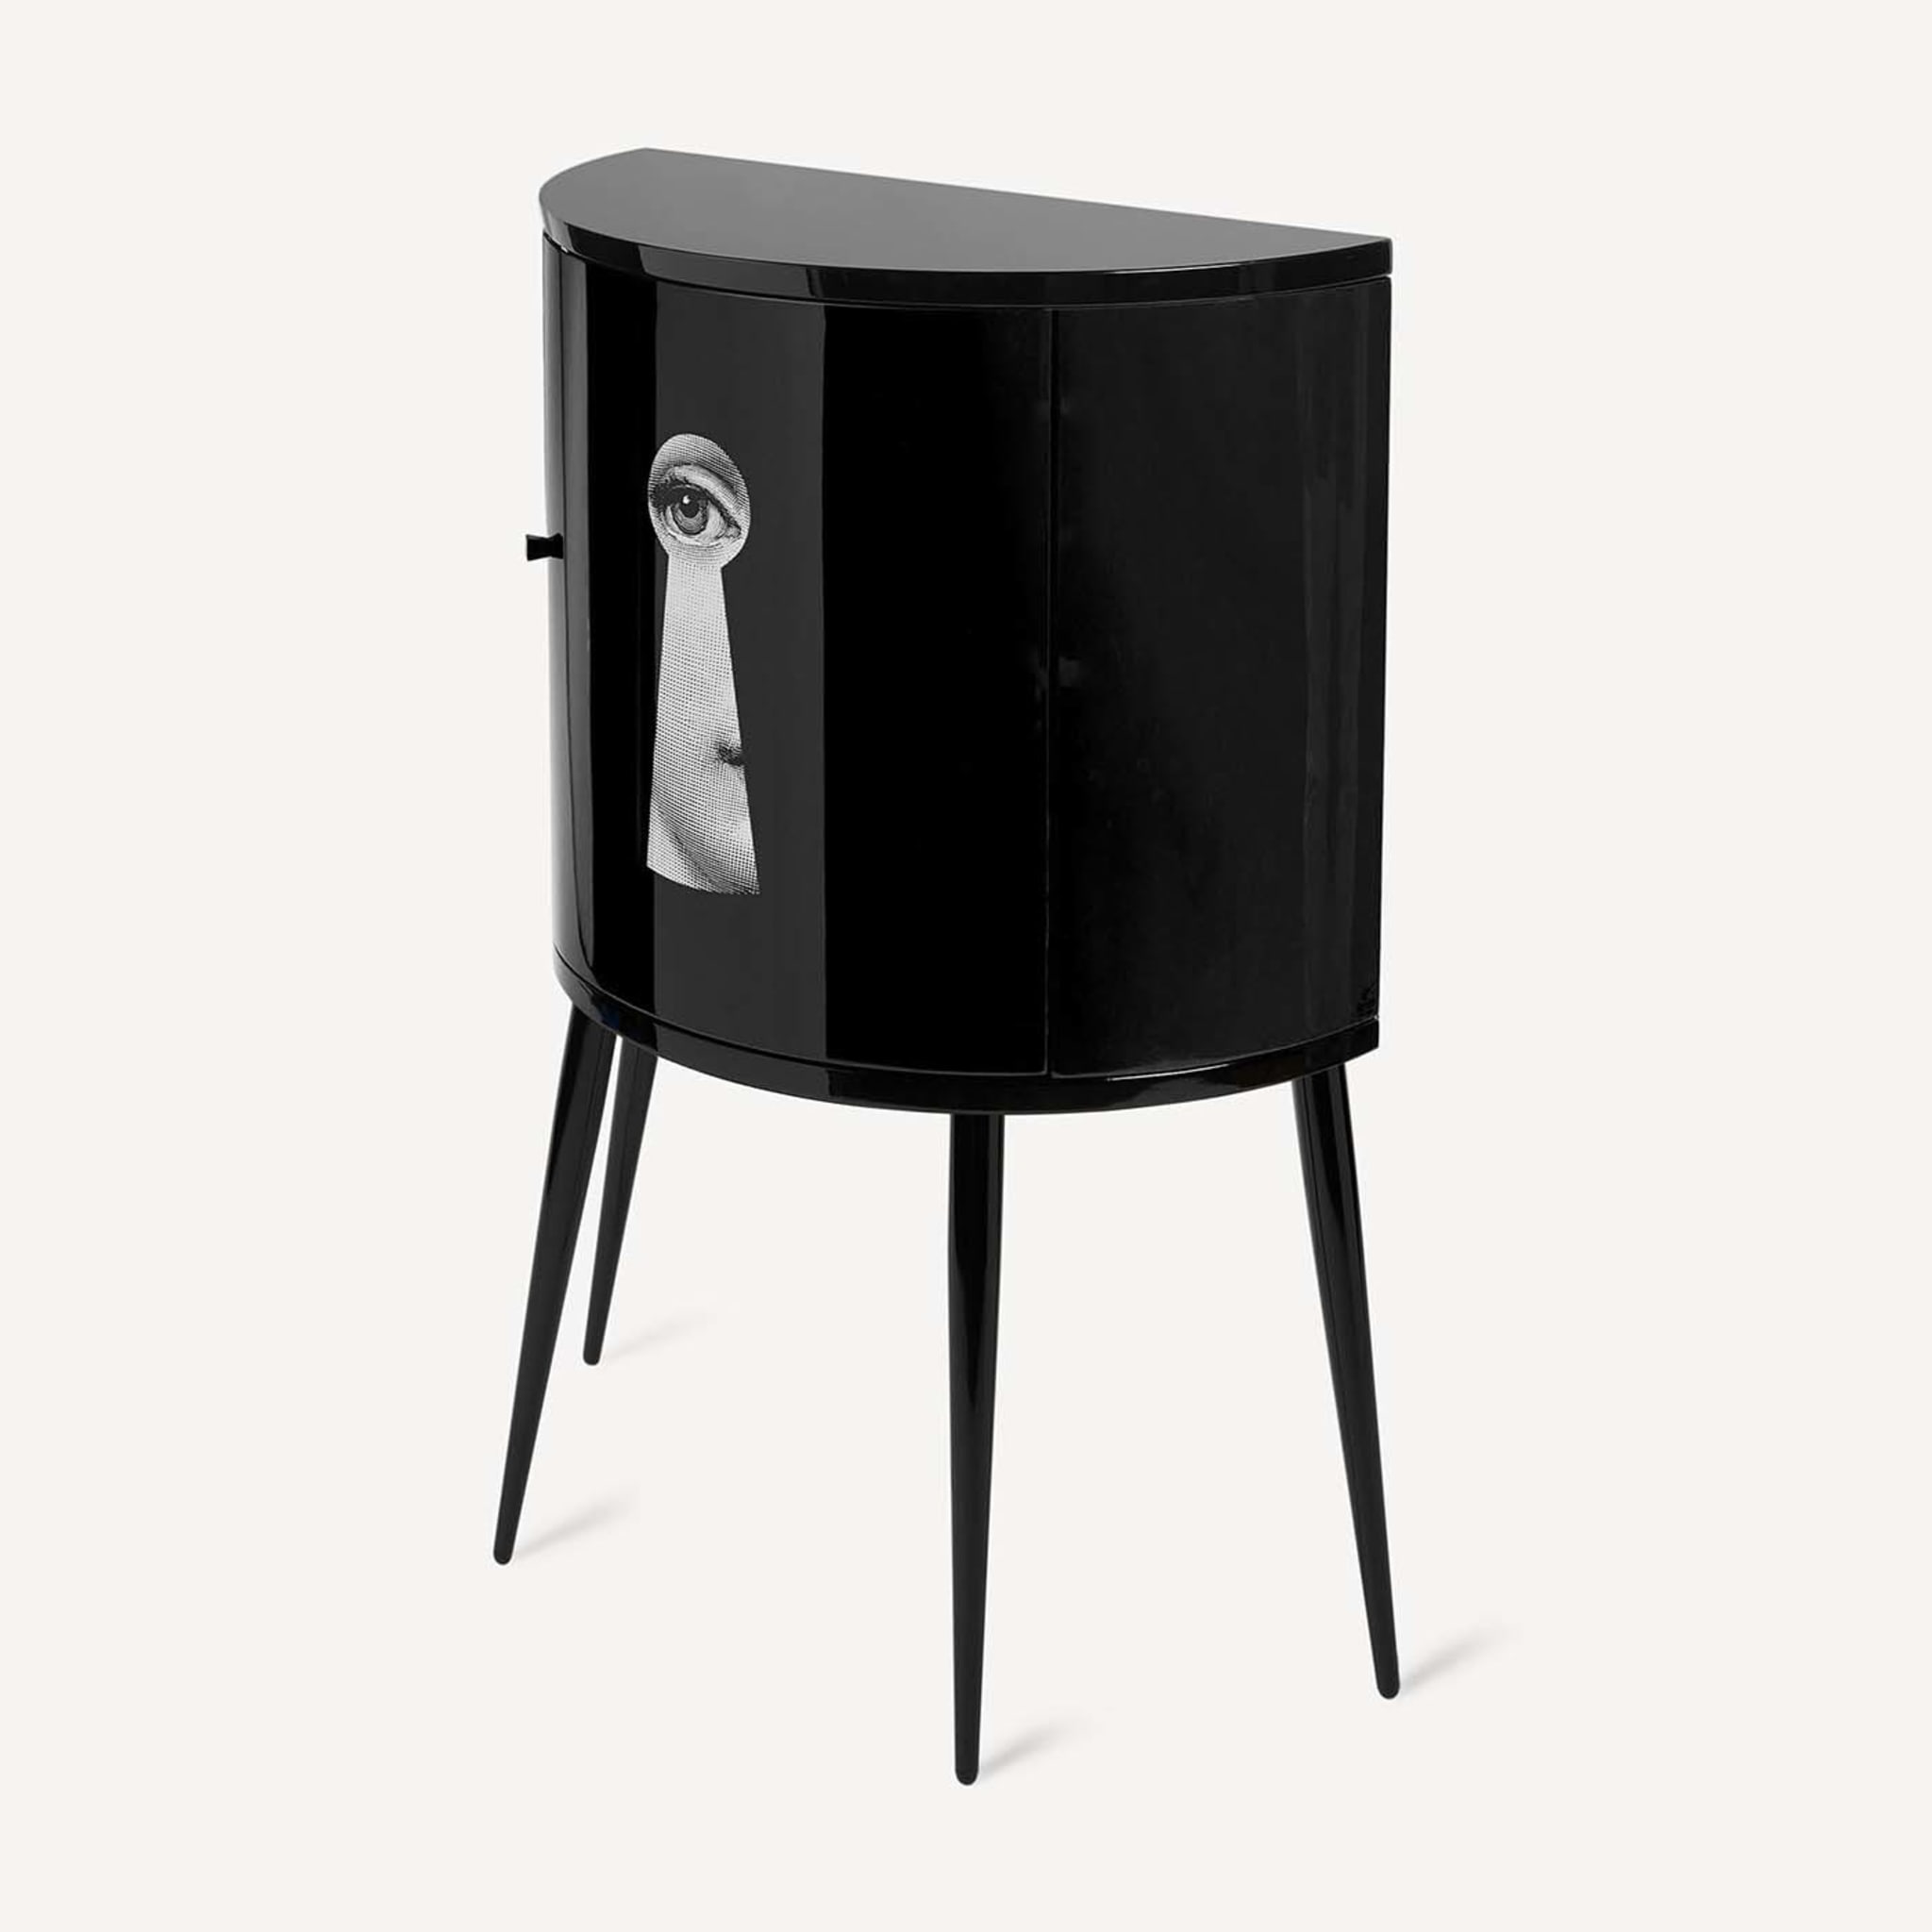 Serratura Black Curved Small Cabinet - Alternative view 2